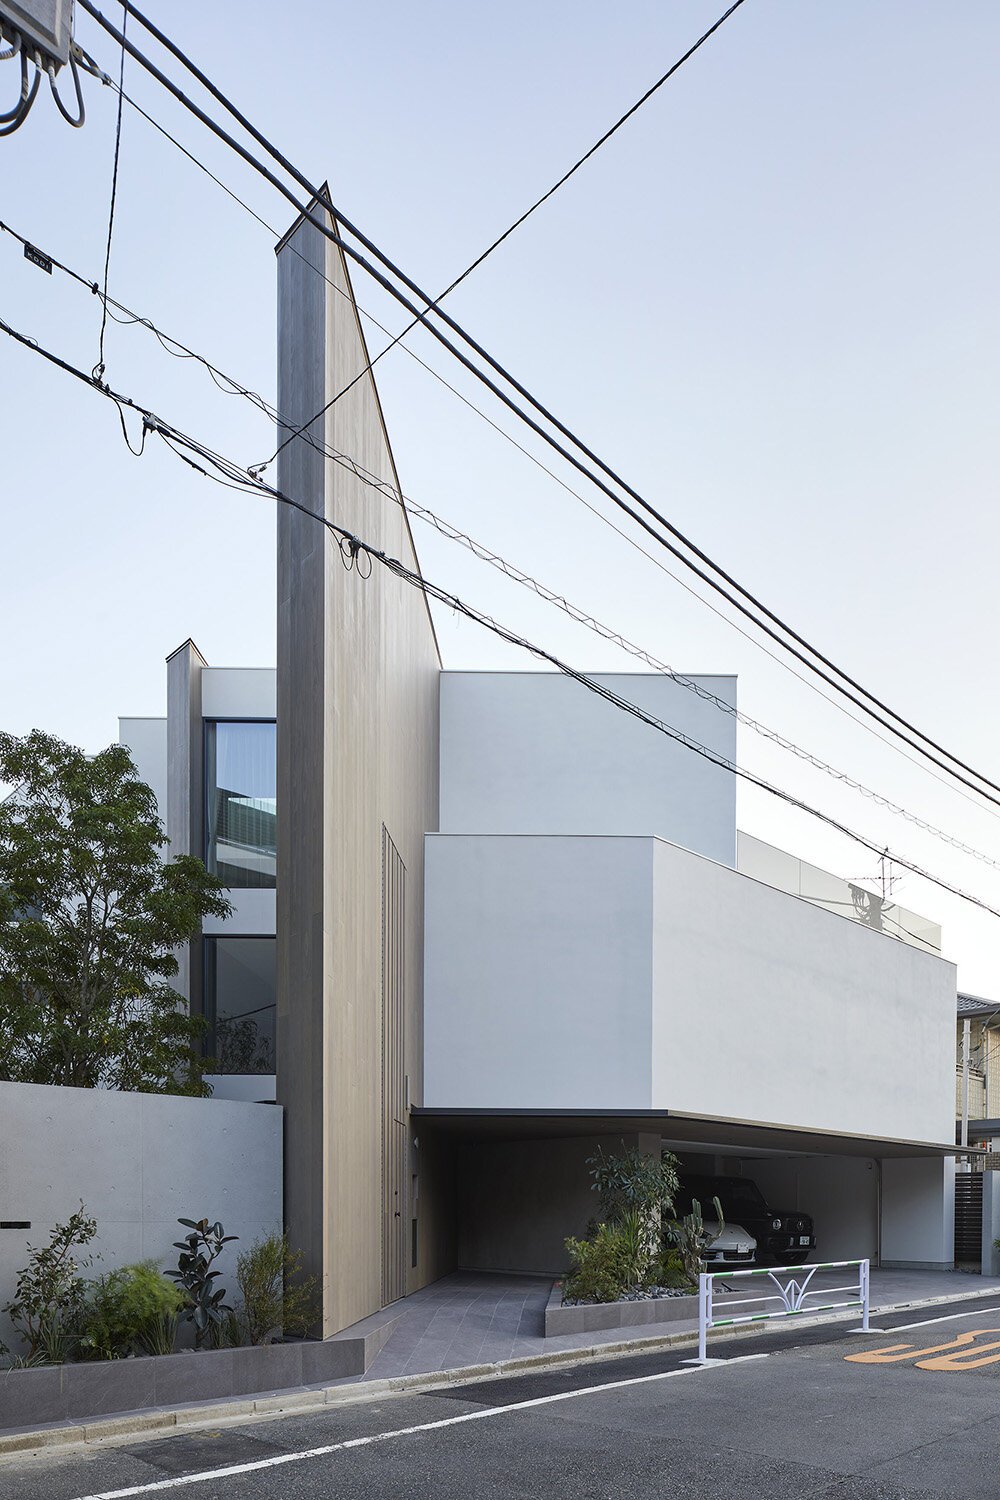  建築家 sinatoシナトの大野力が設計した住宅Shoto Sの外観デザイン。東京都渋谷区松濤に計画された。 